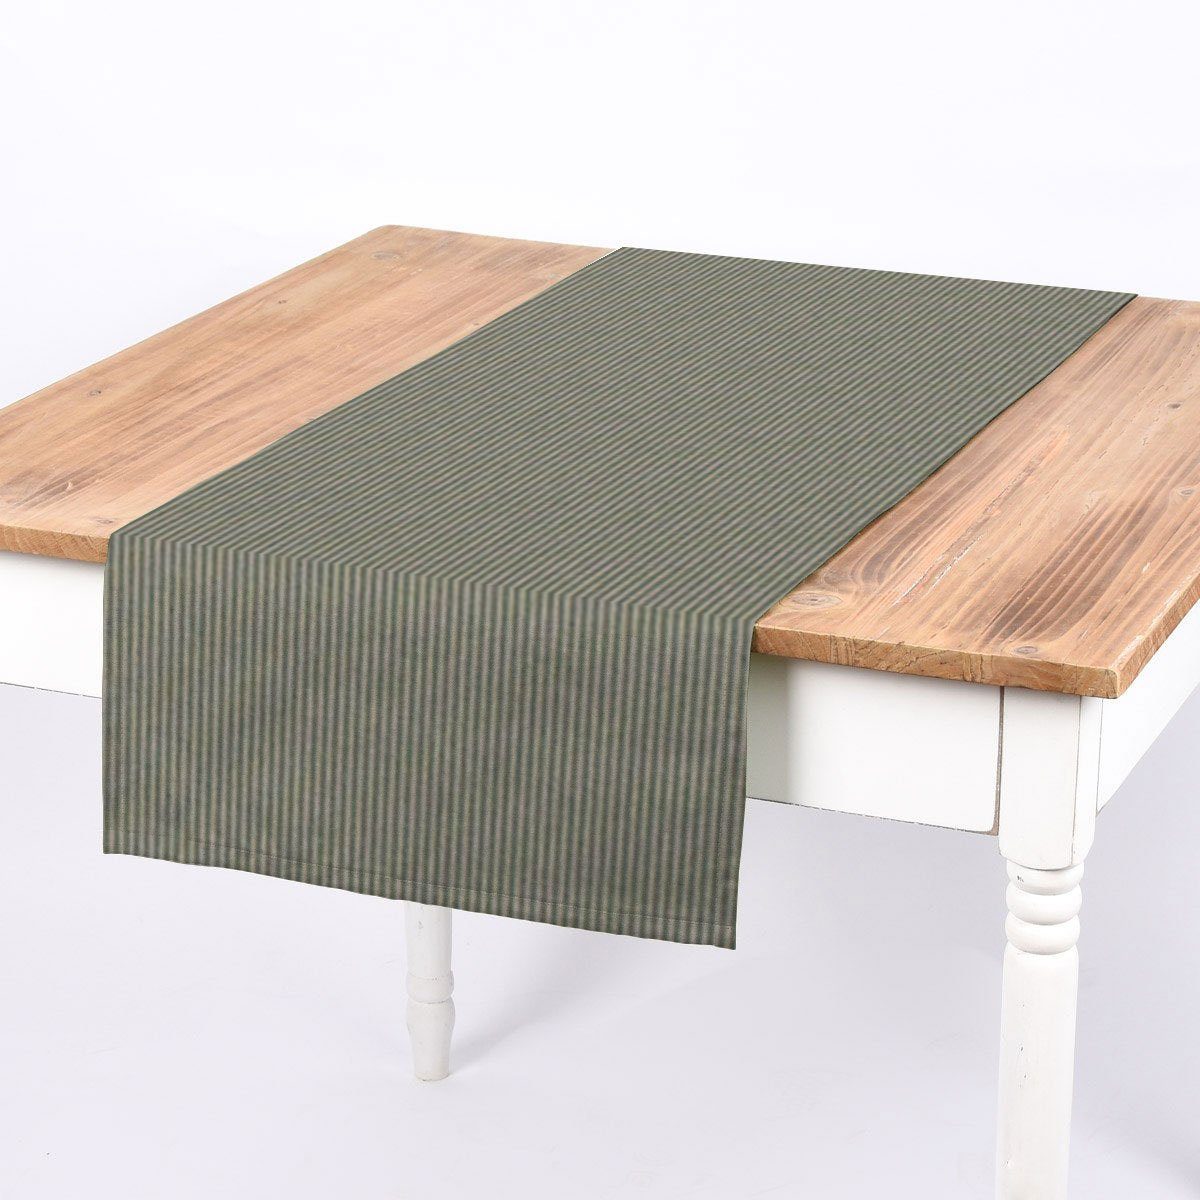 SCHÖNER LEBEN. Tischläufer SCHÖNER LEBEN. Tischläufer Streifen 3mm beige mintgrün 40x160cm, handmade